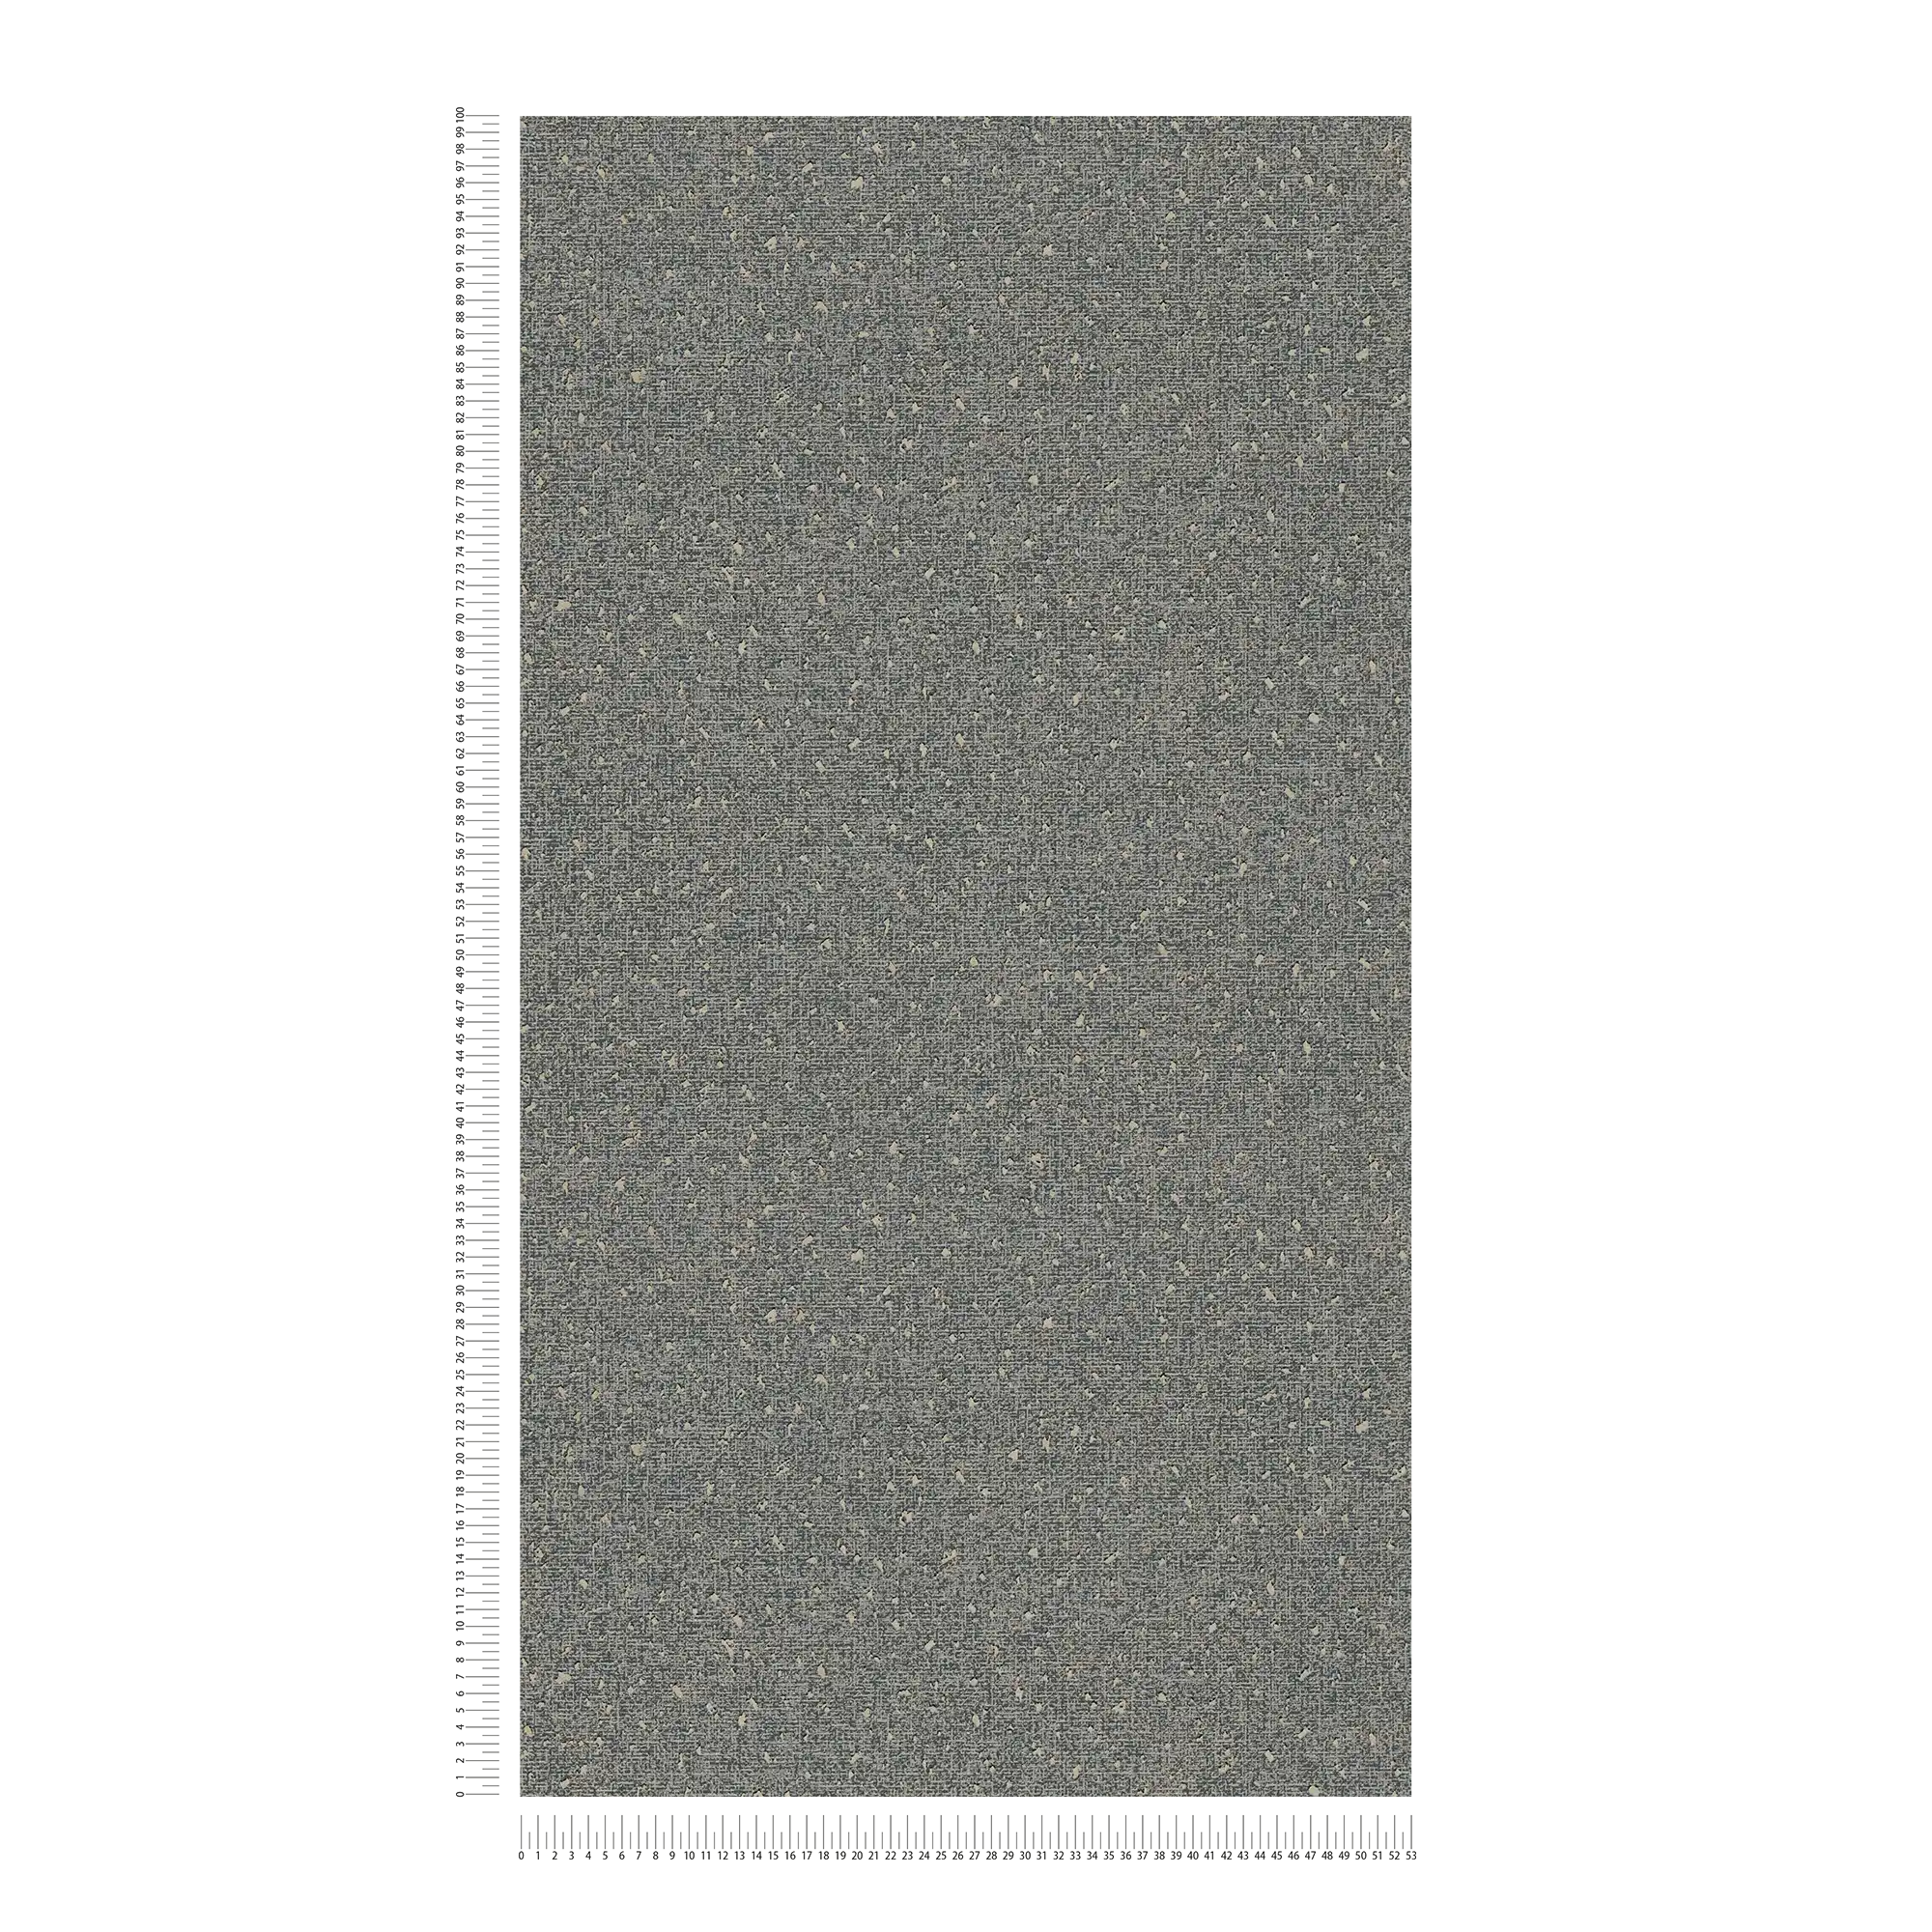             Carta da parati con struttura tessile e accenti metallici - grigio, metallizzato
        